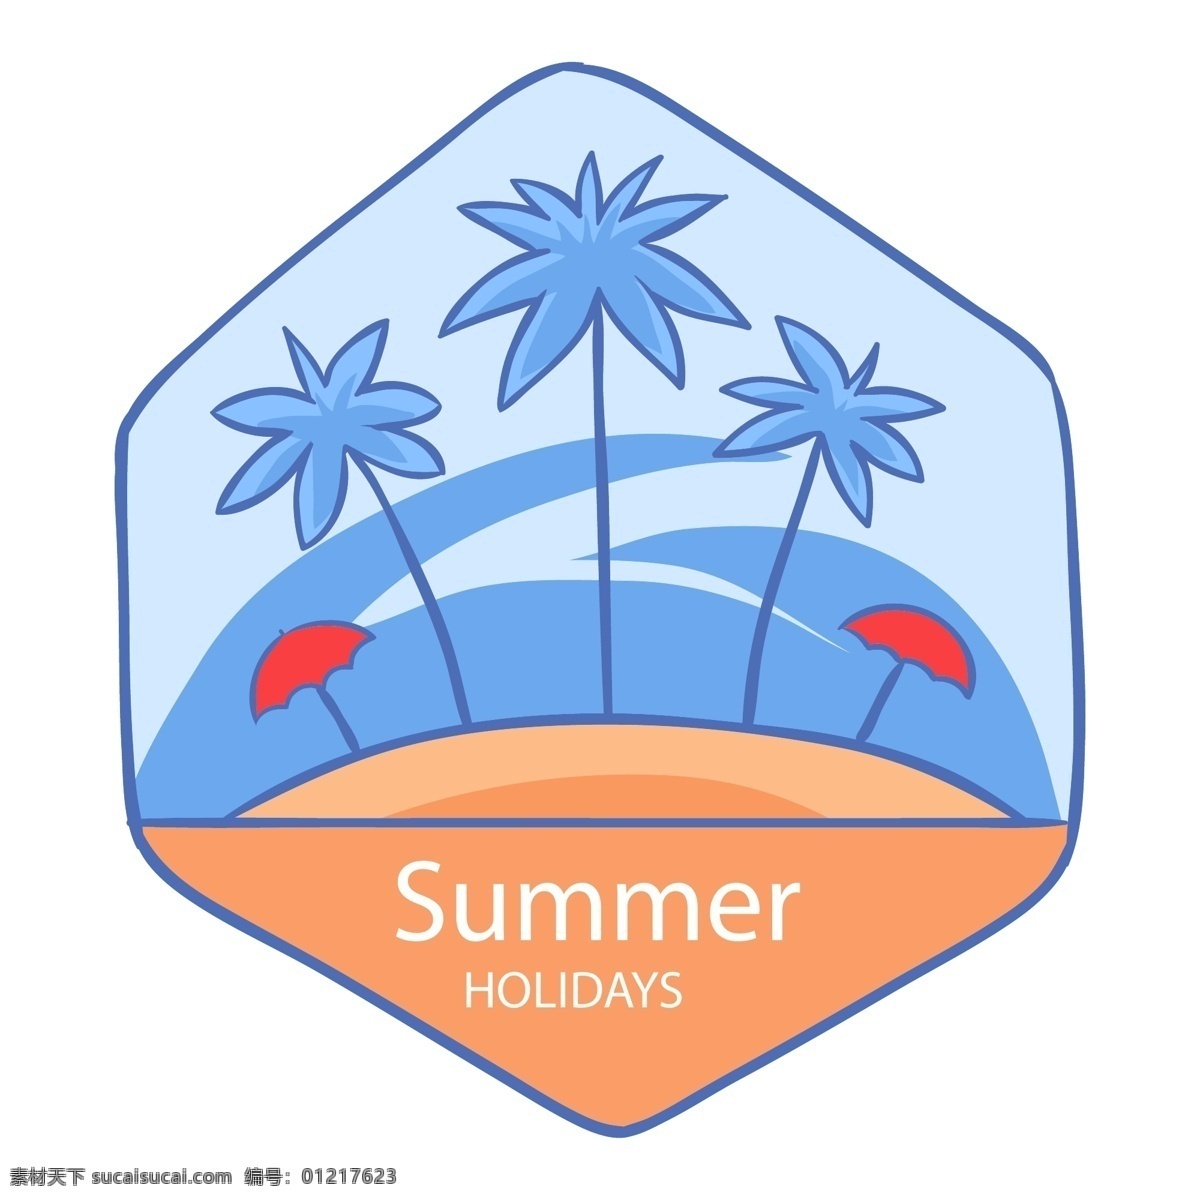 夏季 度假 标签 矢量图 夏天 假期 summer 椰子 椰树 矢量 夏季标签 度假标签